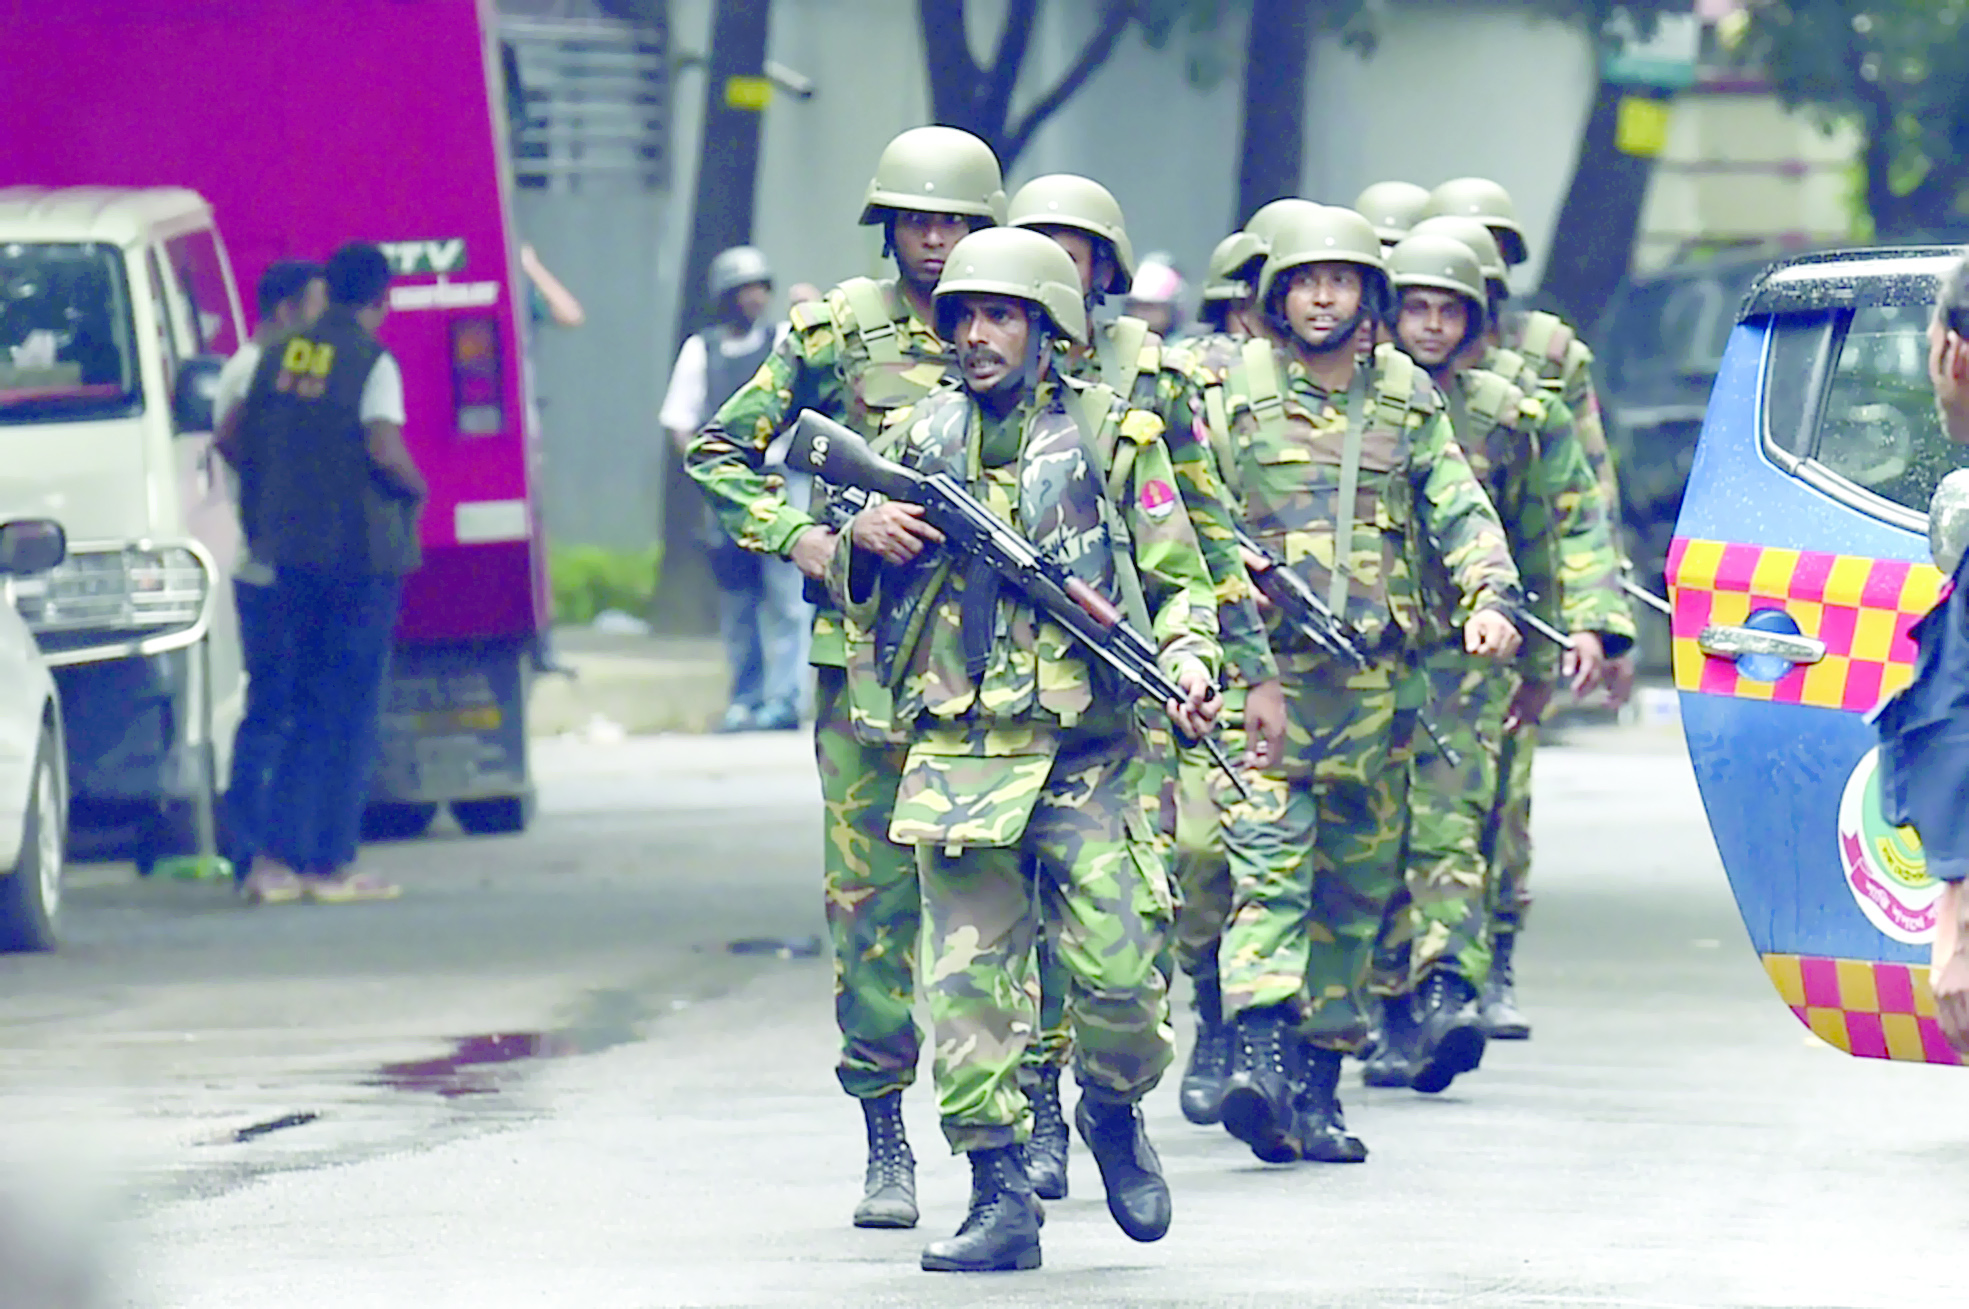 شاهد عيان : احتجاز الرهائن في دكا  كان "مجزرة"